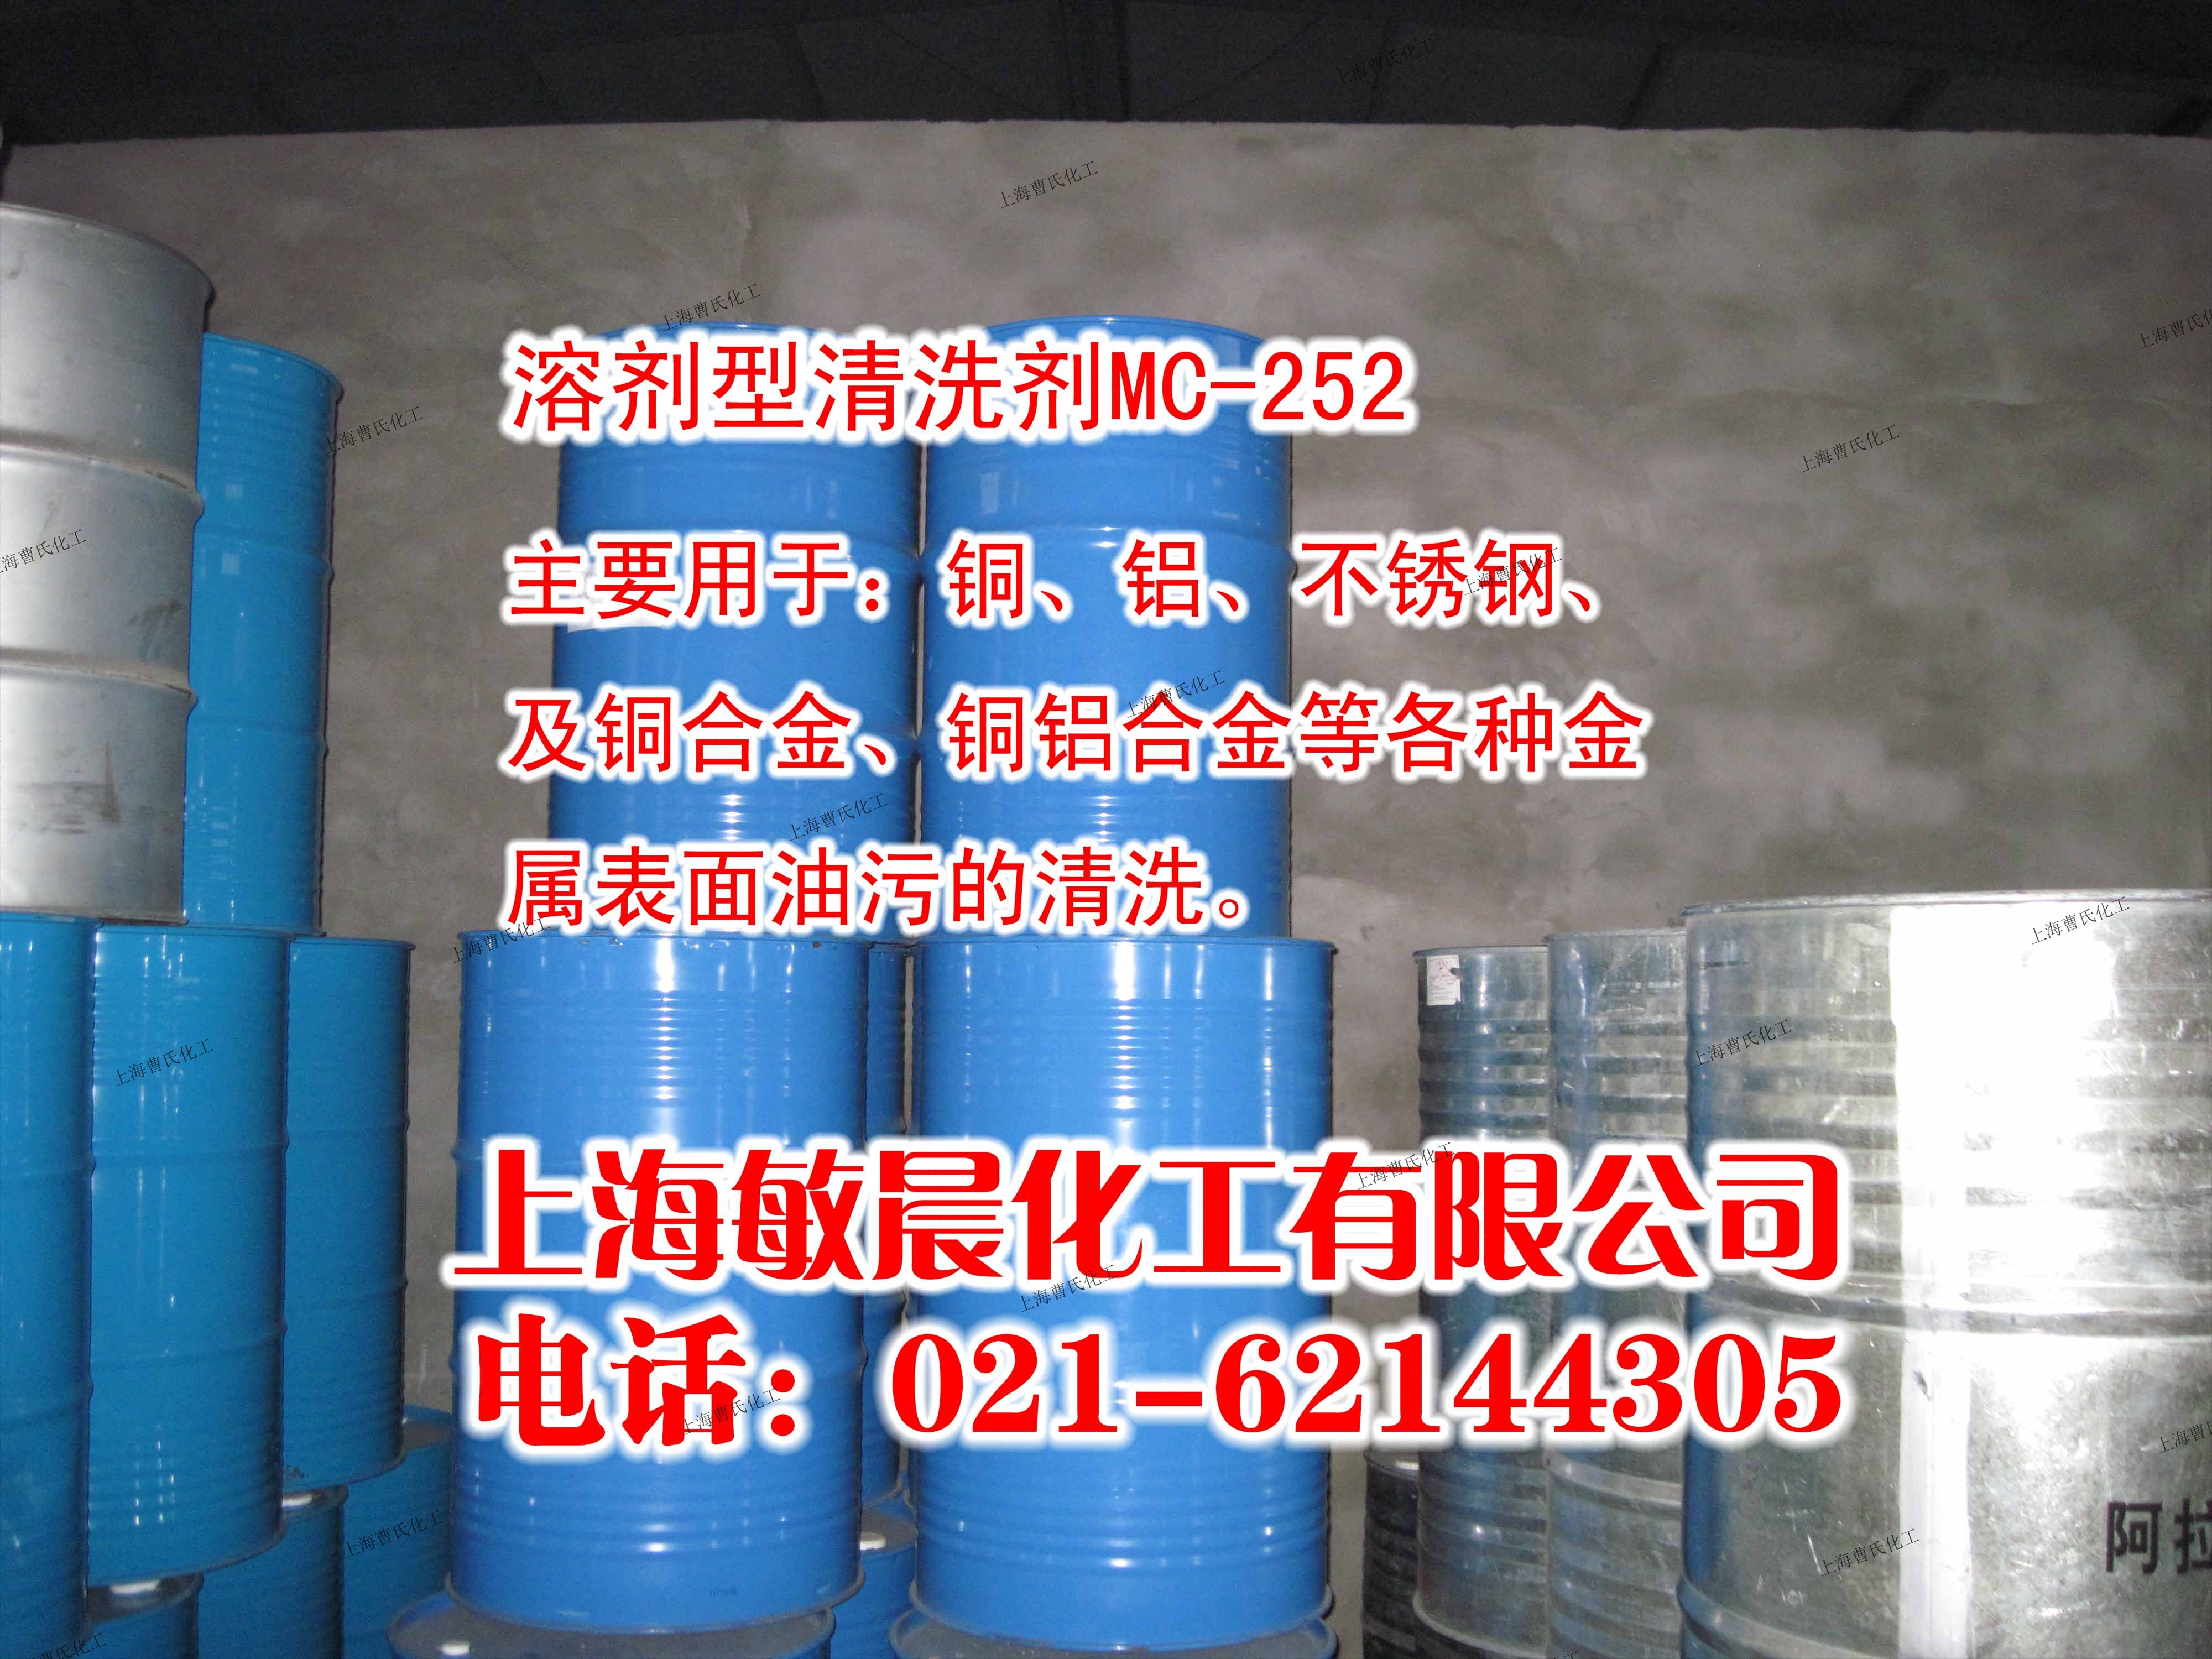 MC252 环保碳氢清洗剂